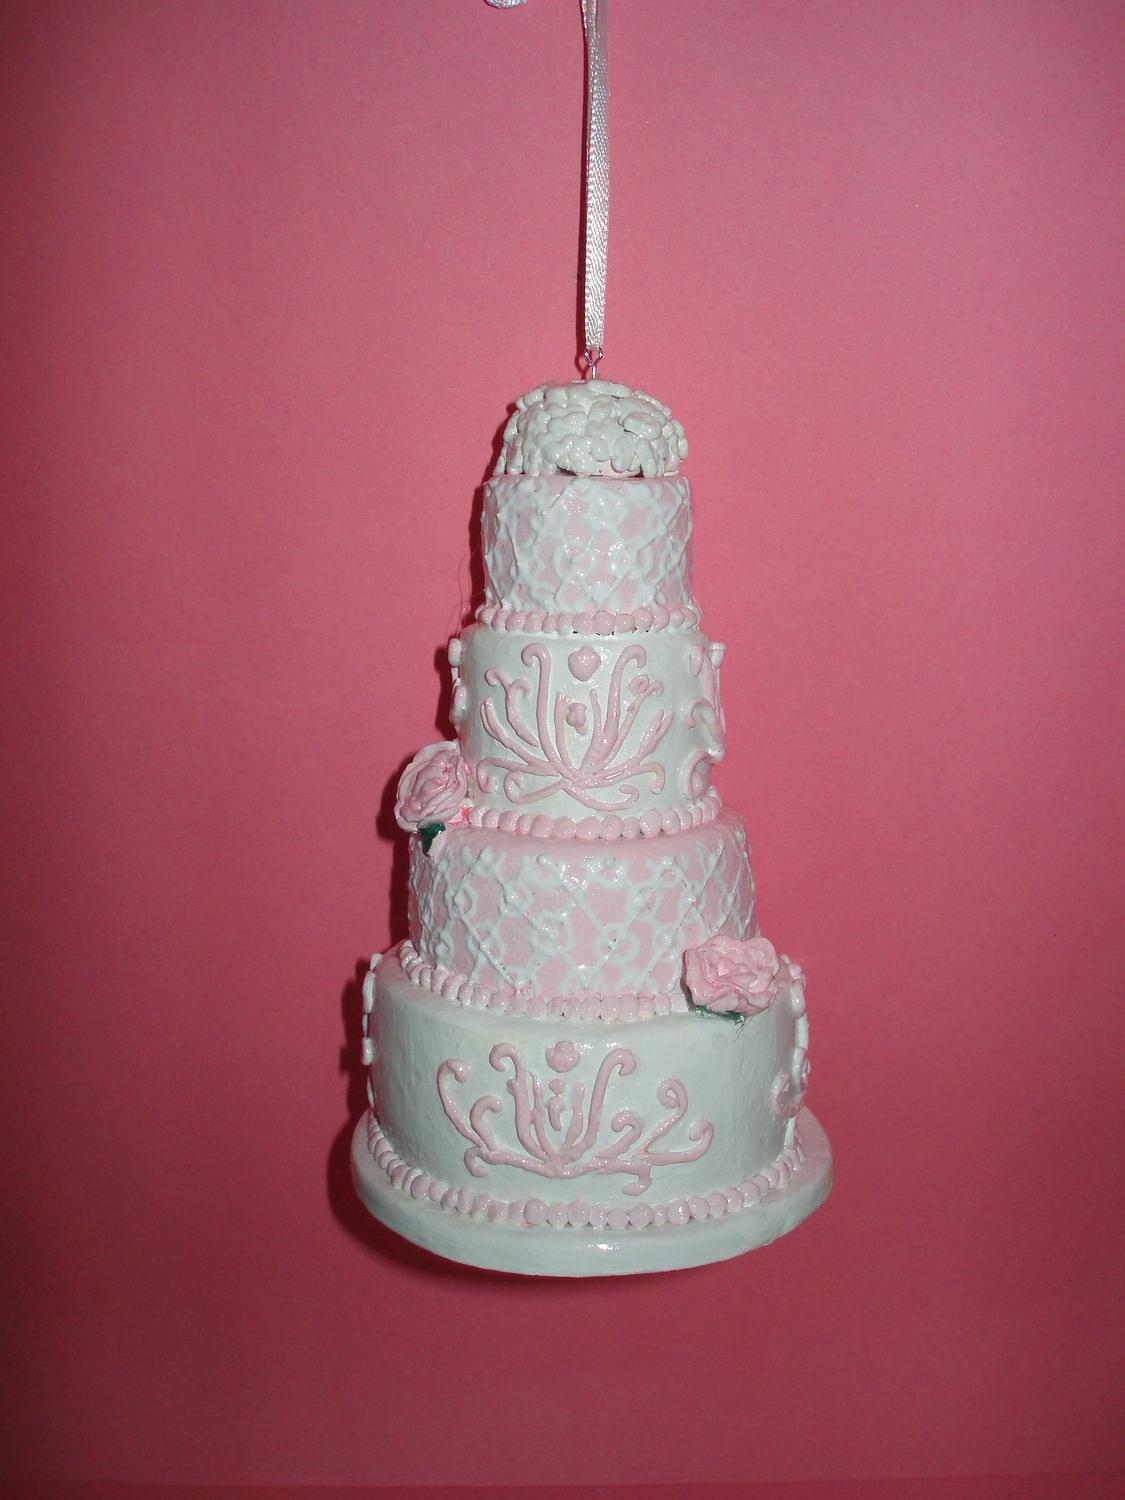 Replica Wedding Cake Ornament